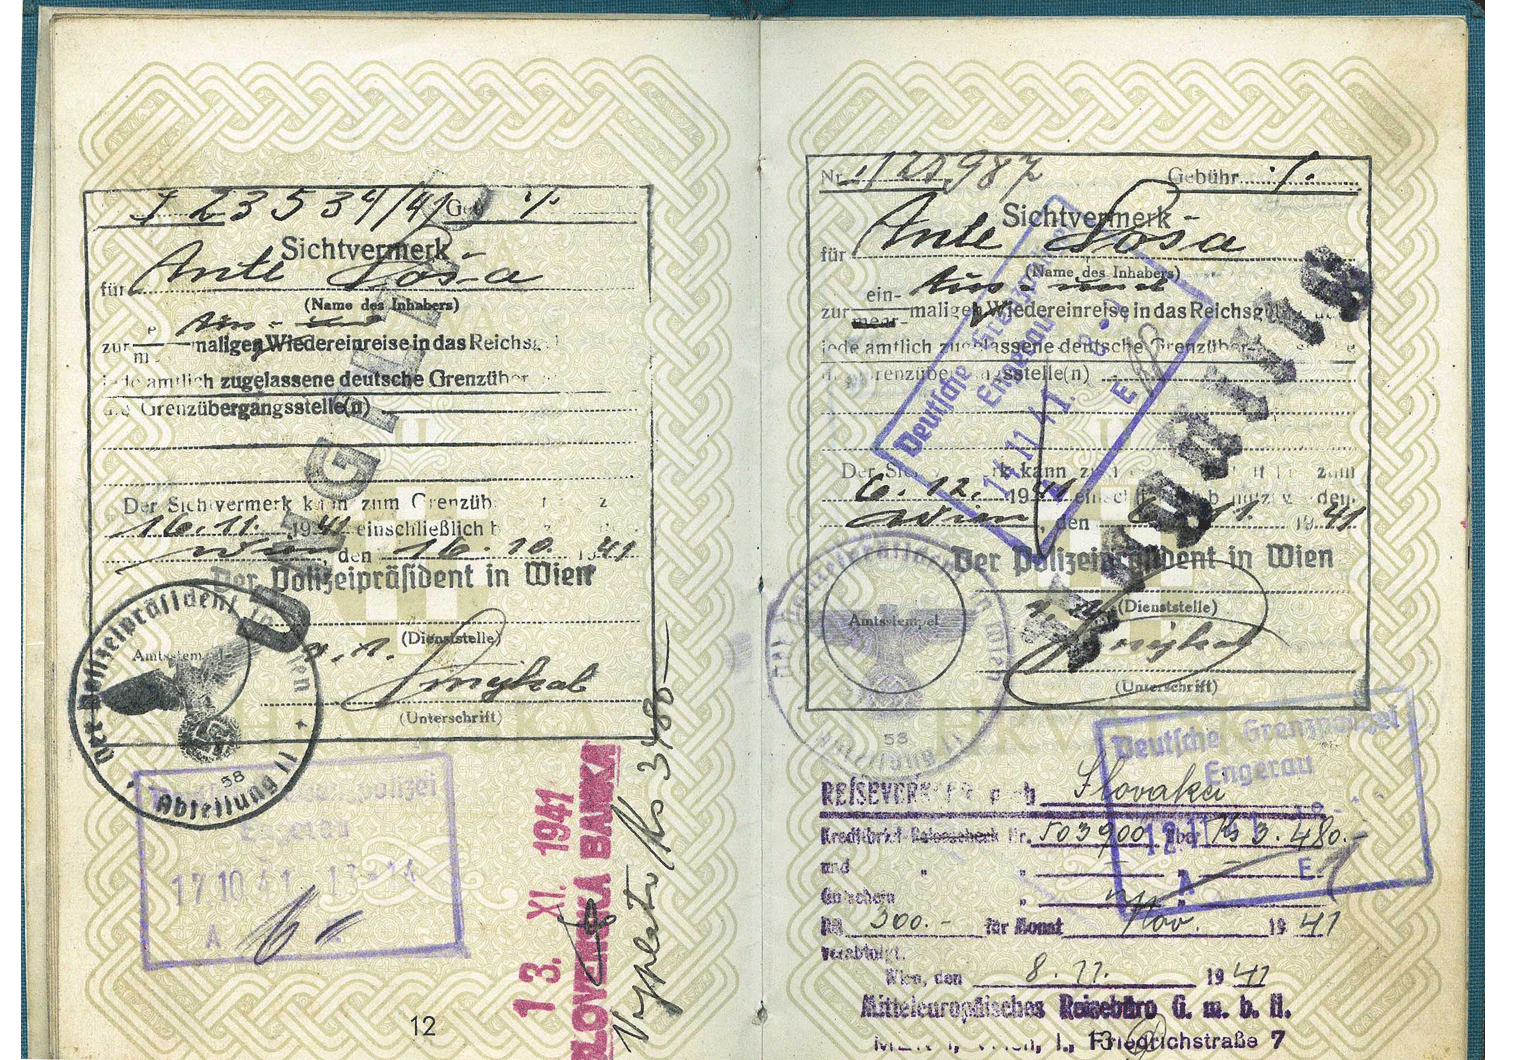 WW2 German passport visa